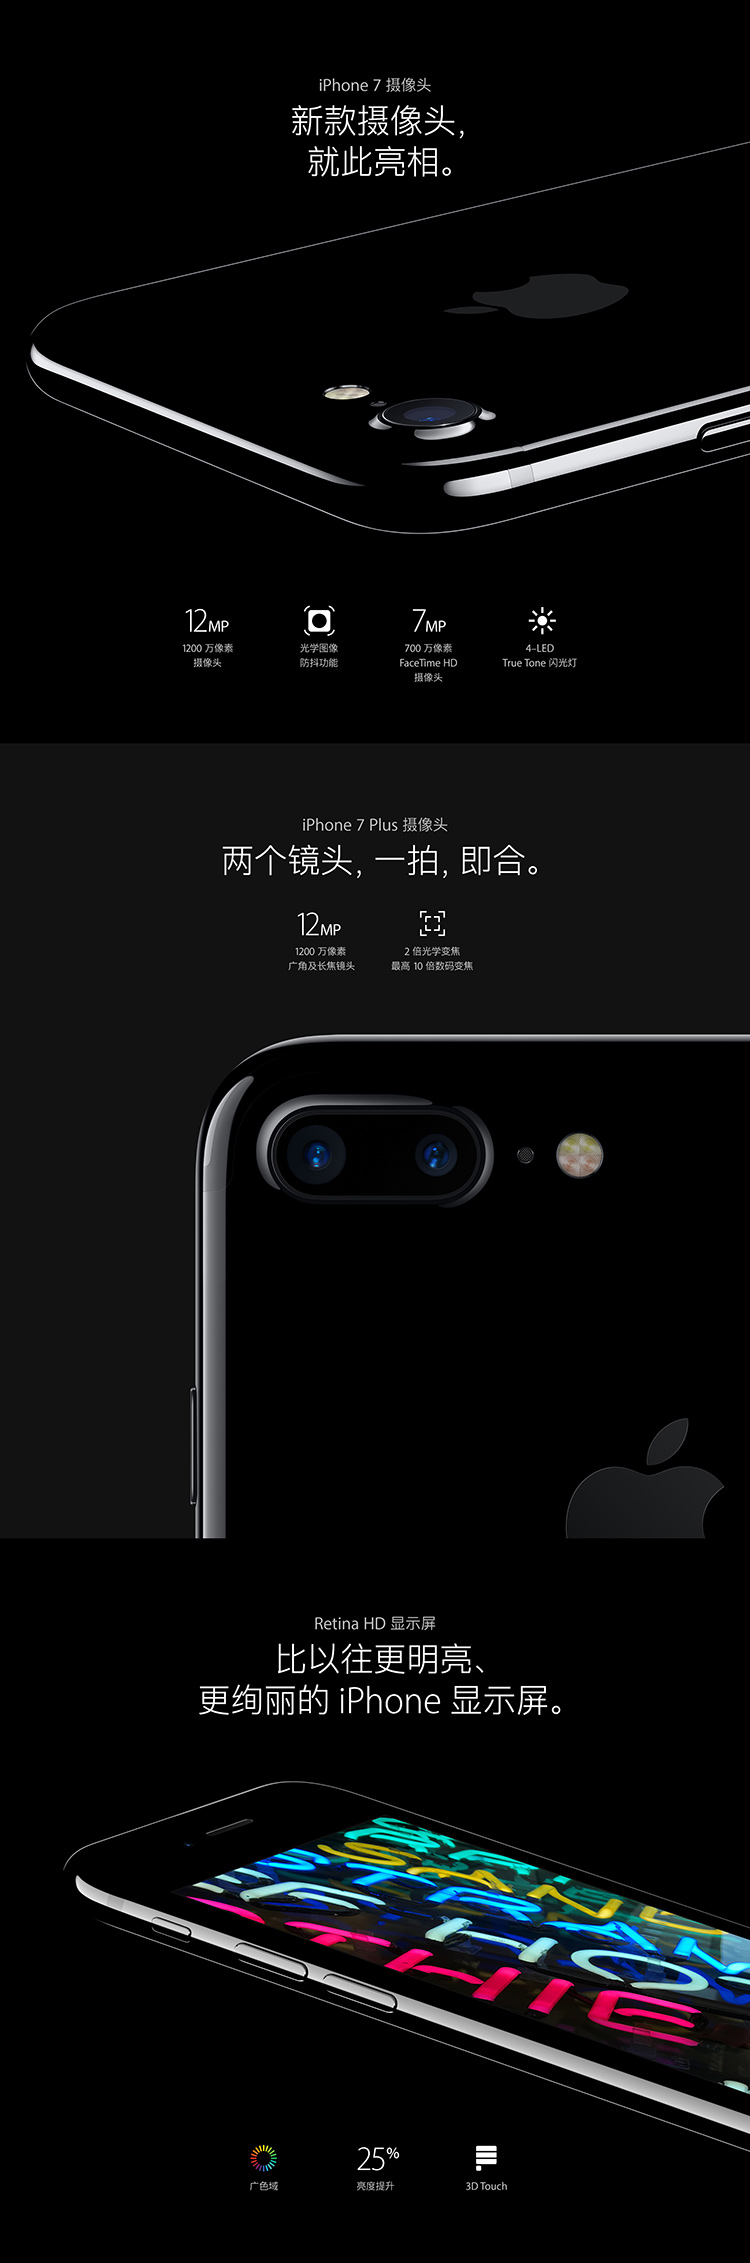 Apple iPhone 7 32GB 金色 移动联通电信4G手机